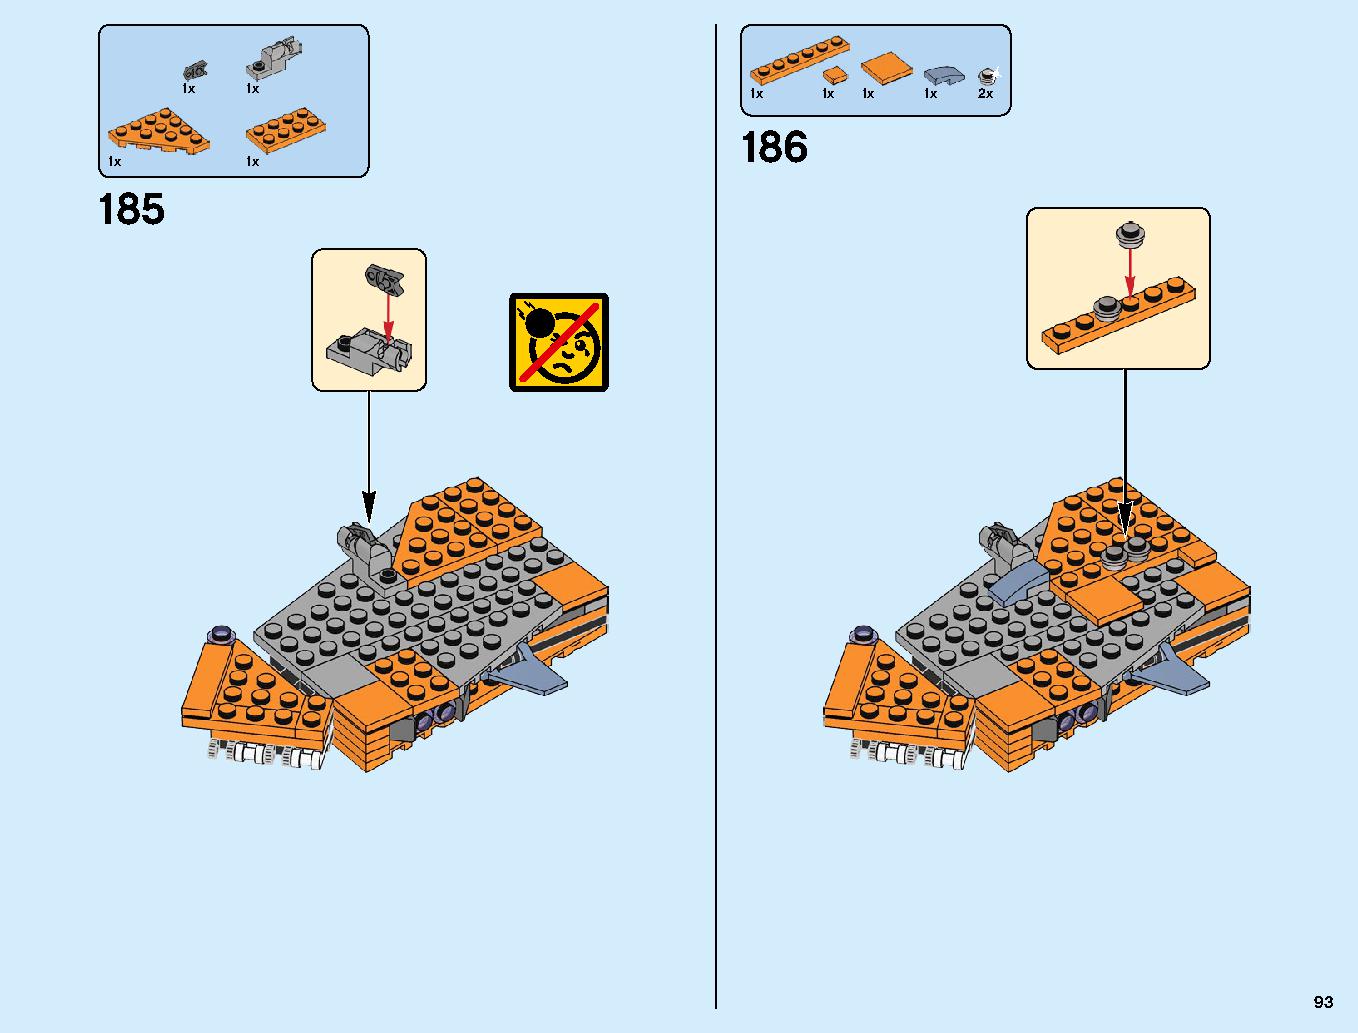 어벤져스 타노스: 최후의 전투 76107 레고 세트 제품정보 레고 조립설명서 93 page